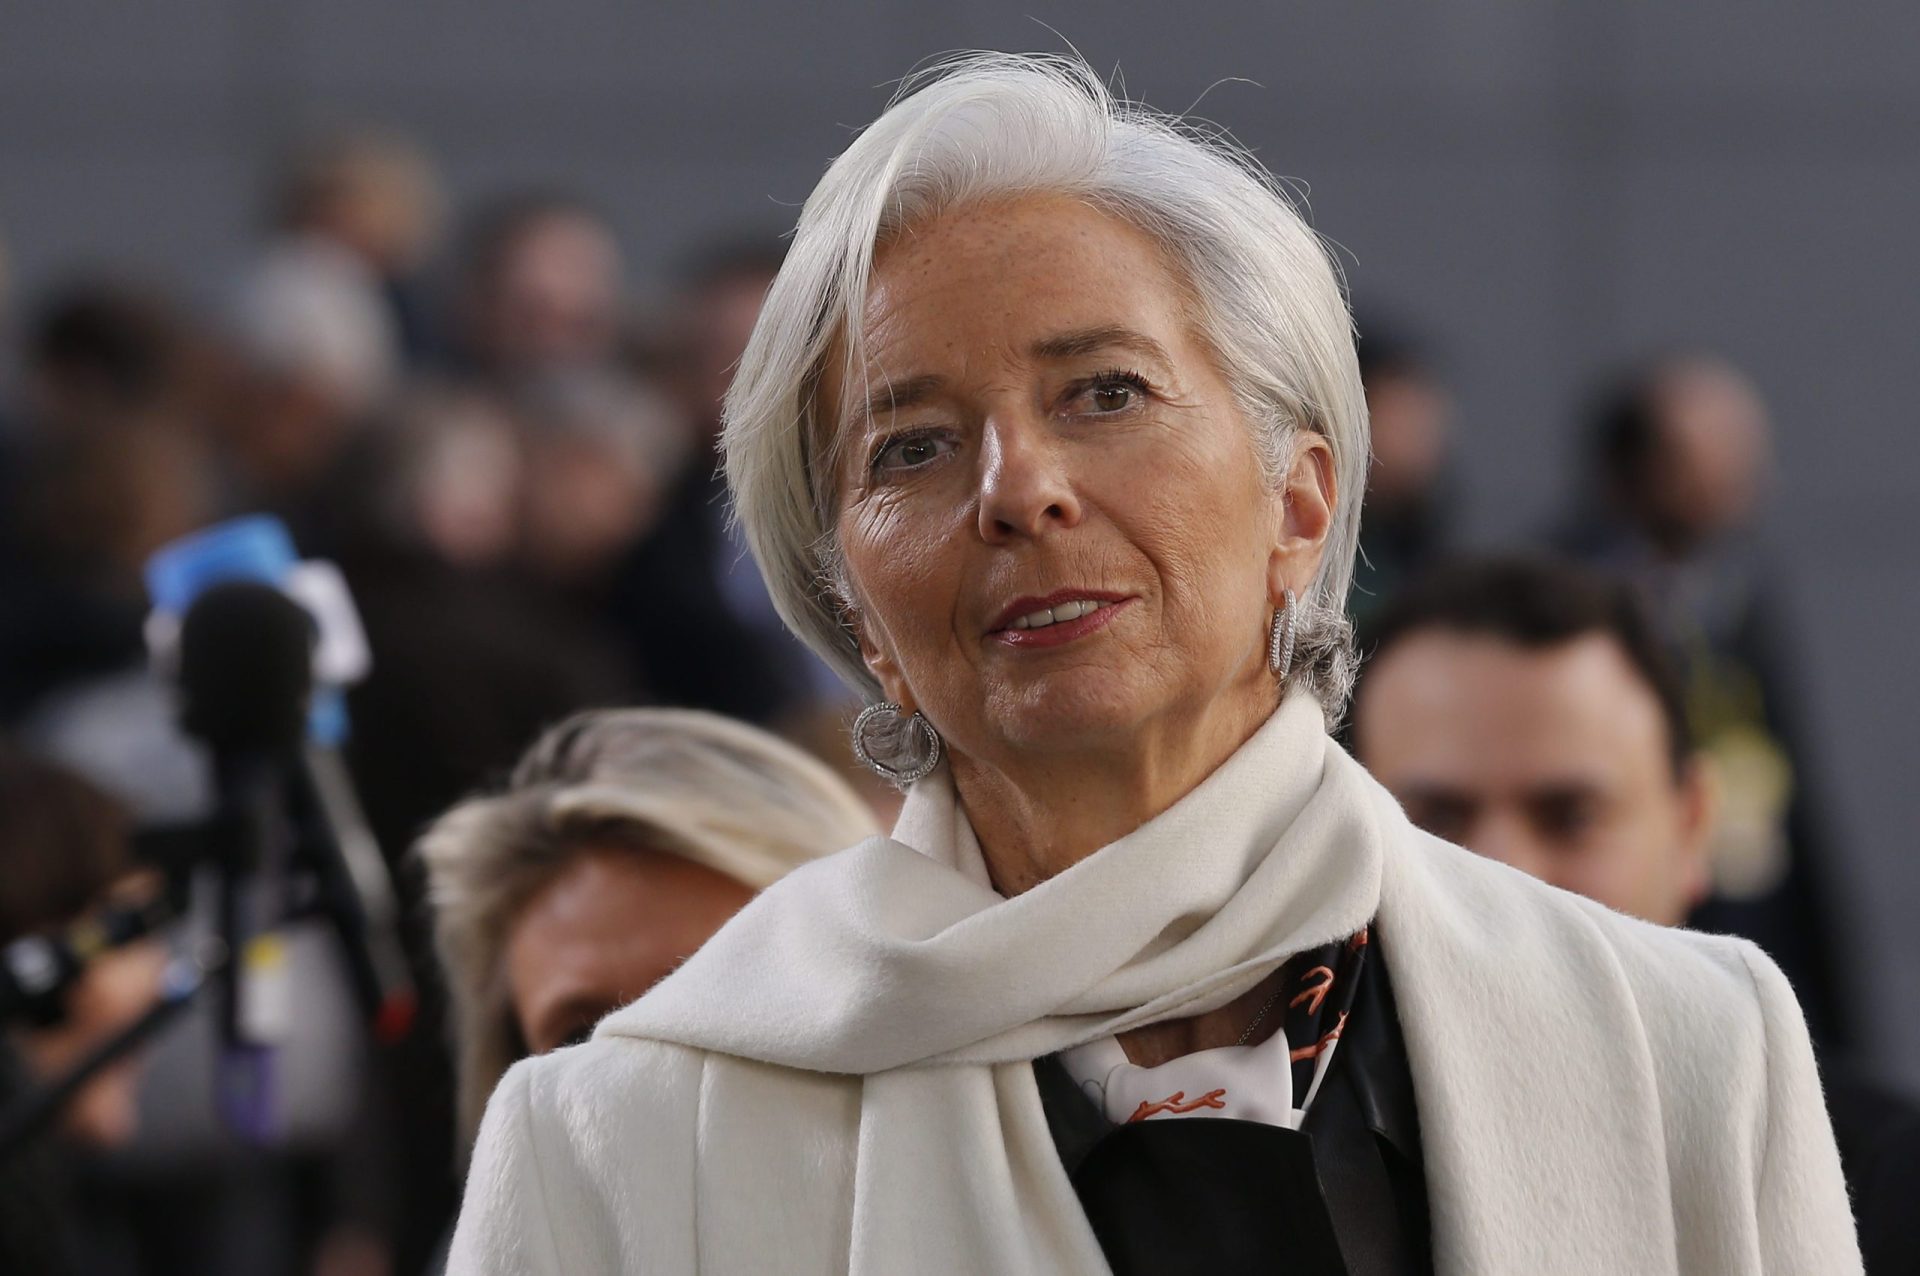 FMI: Reformas antecipadas devem ser suspensas nos setores público e privado